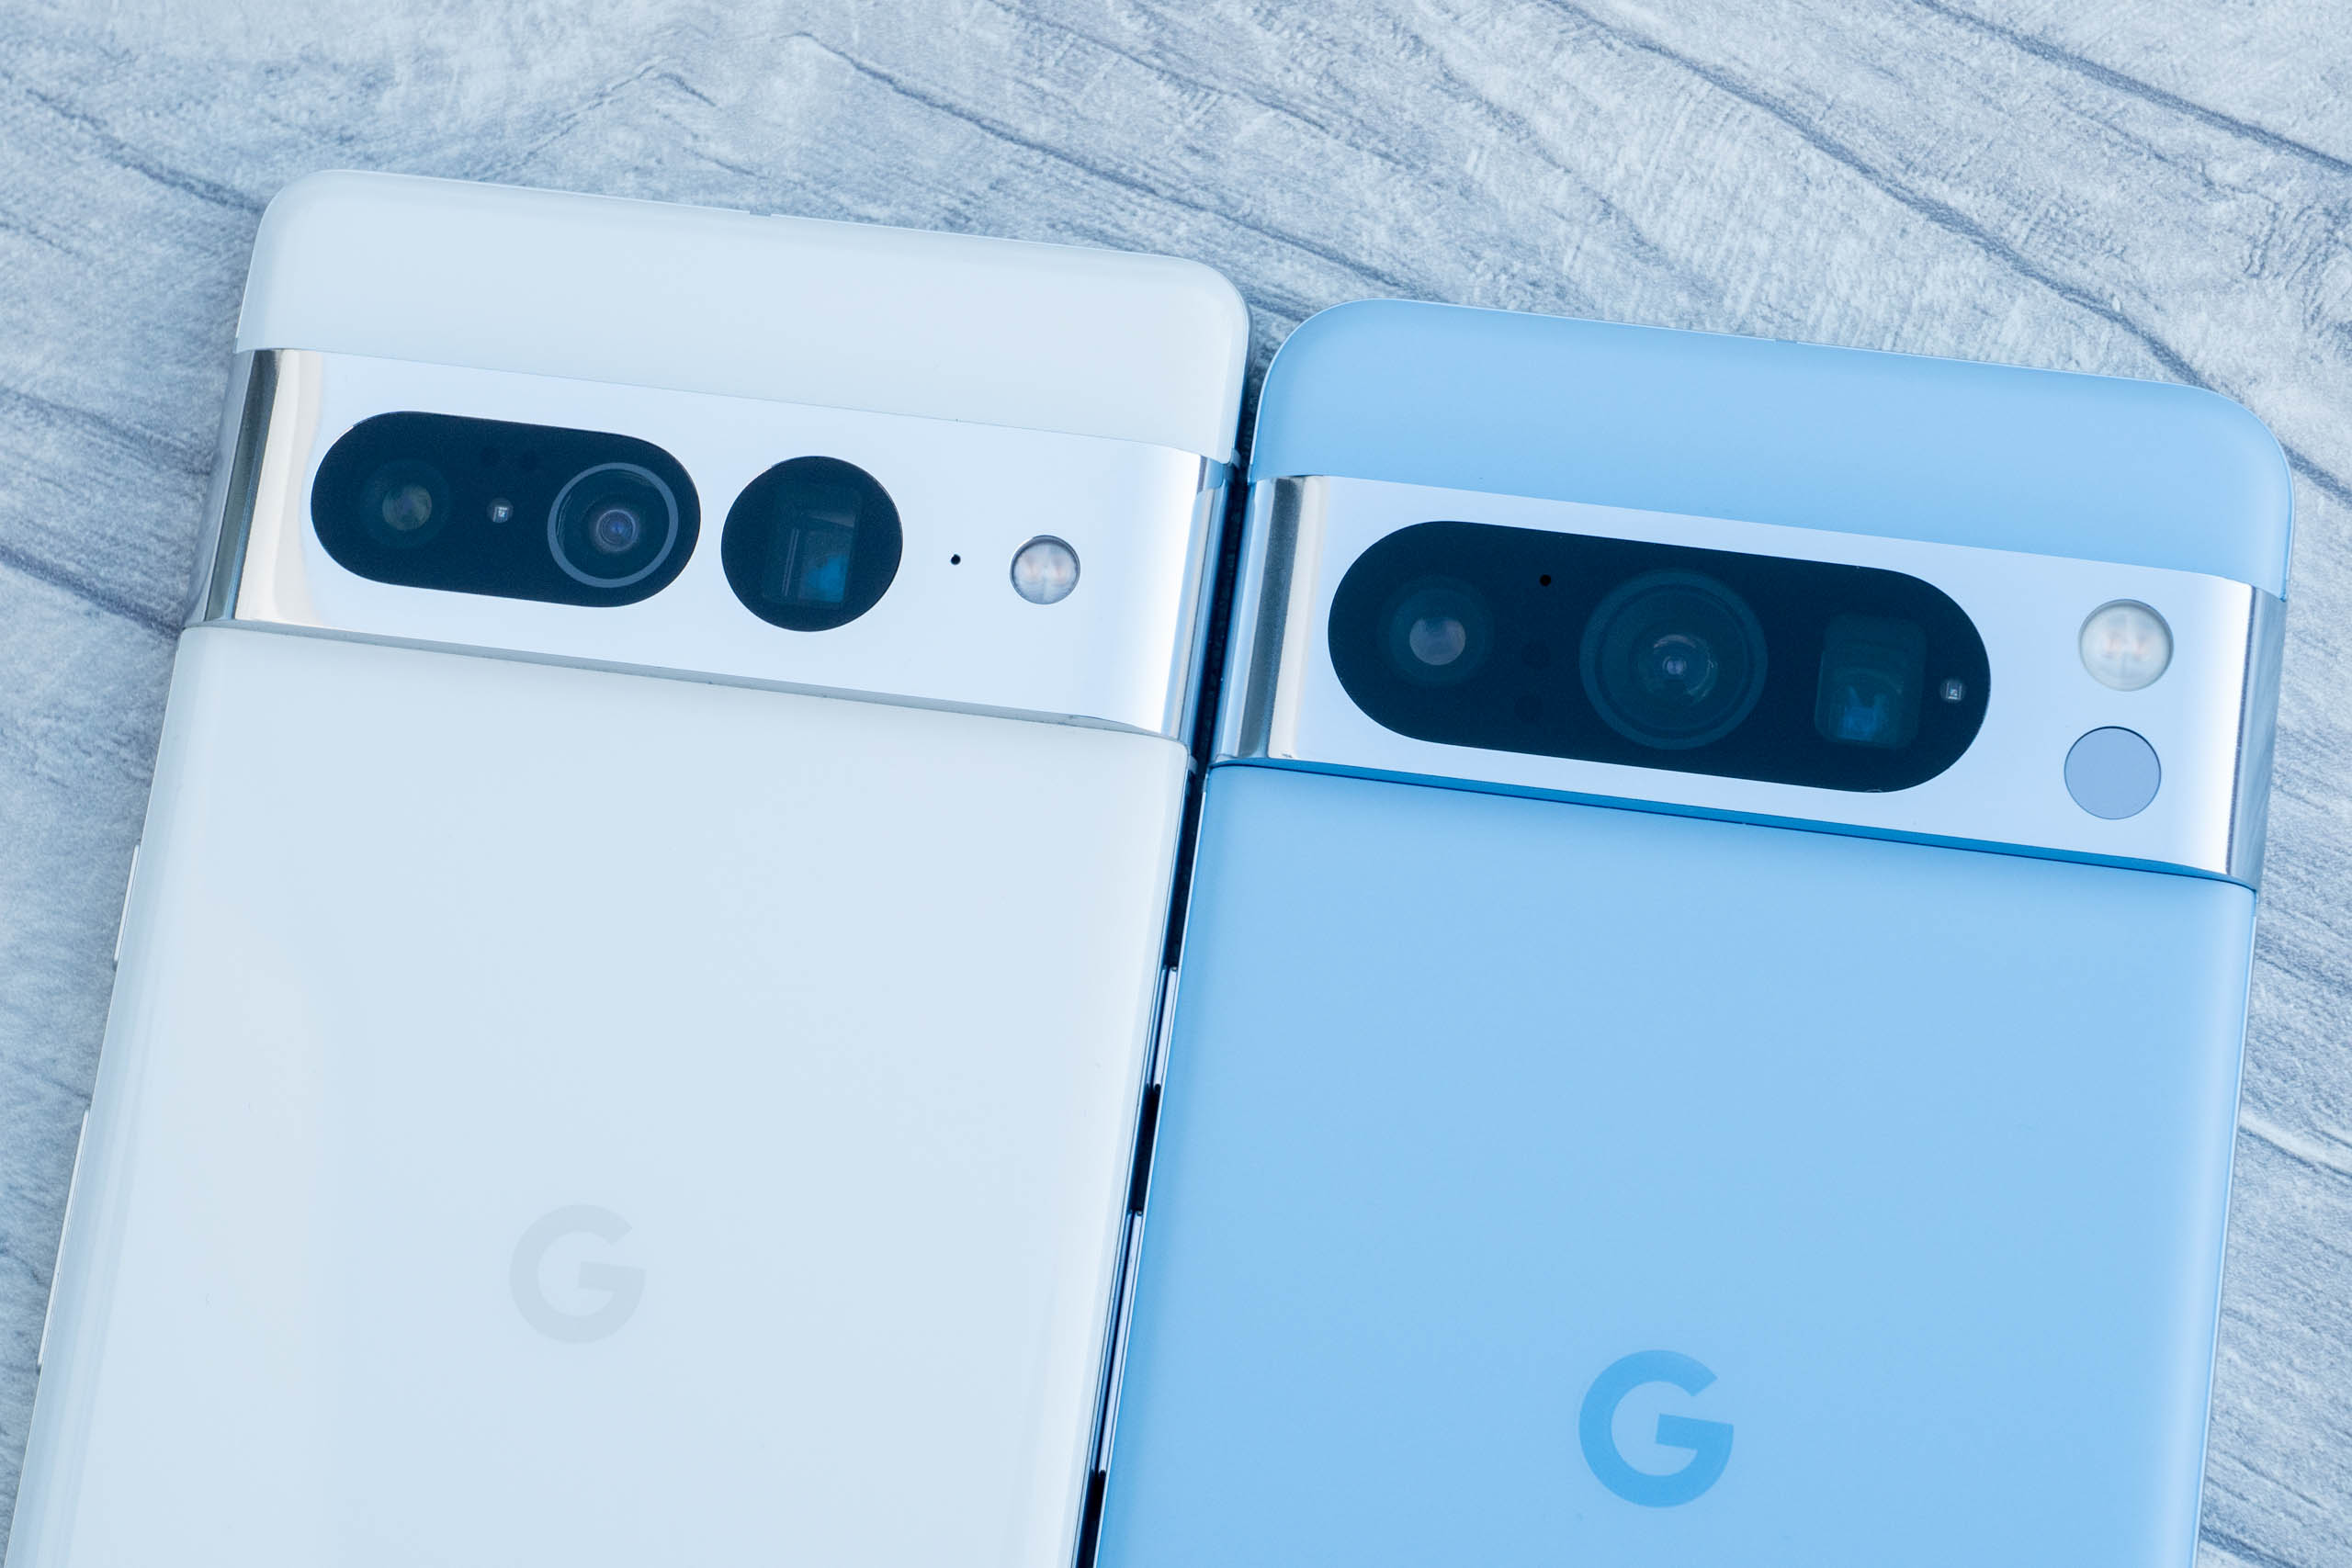 Google Pixel 7 Pro: Price, specs and best deals